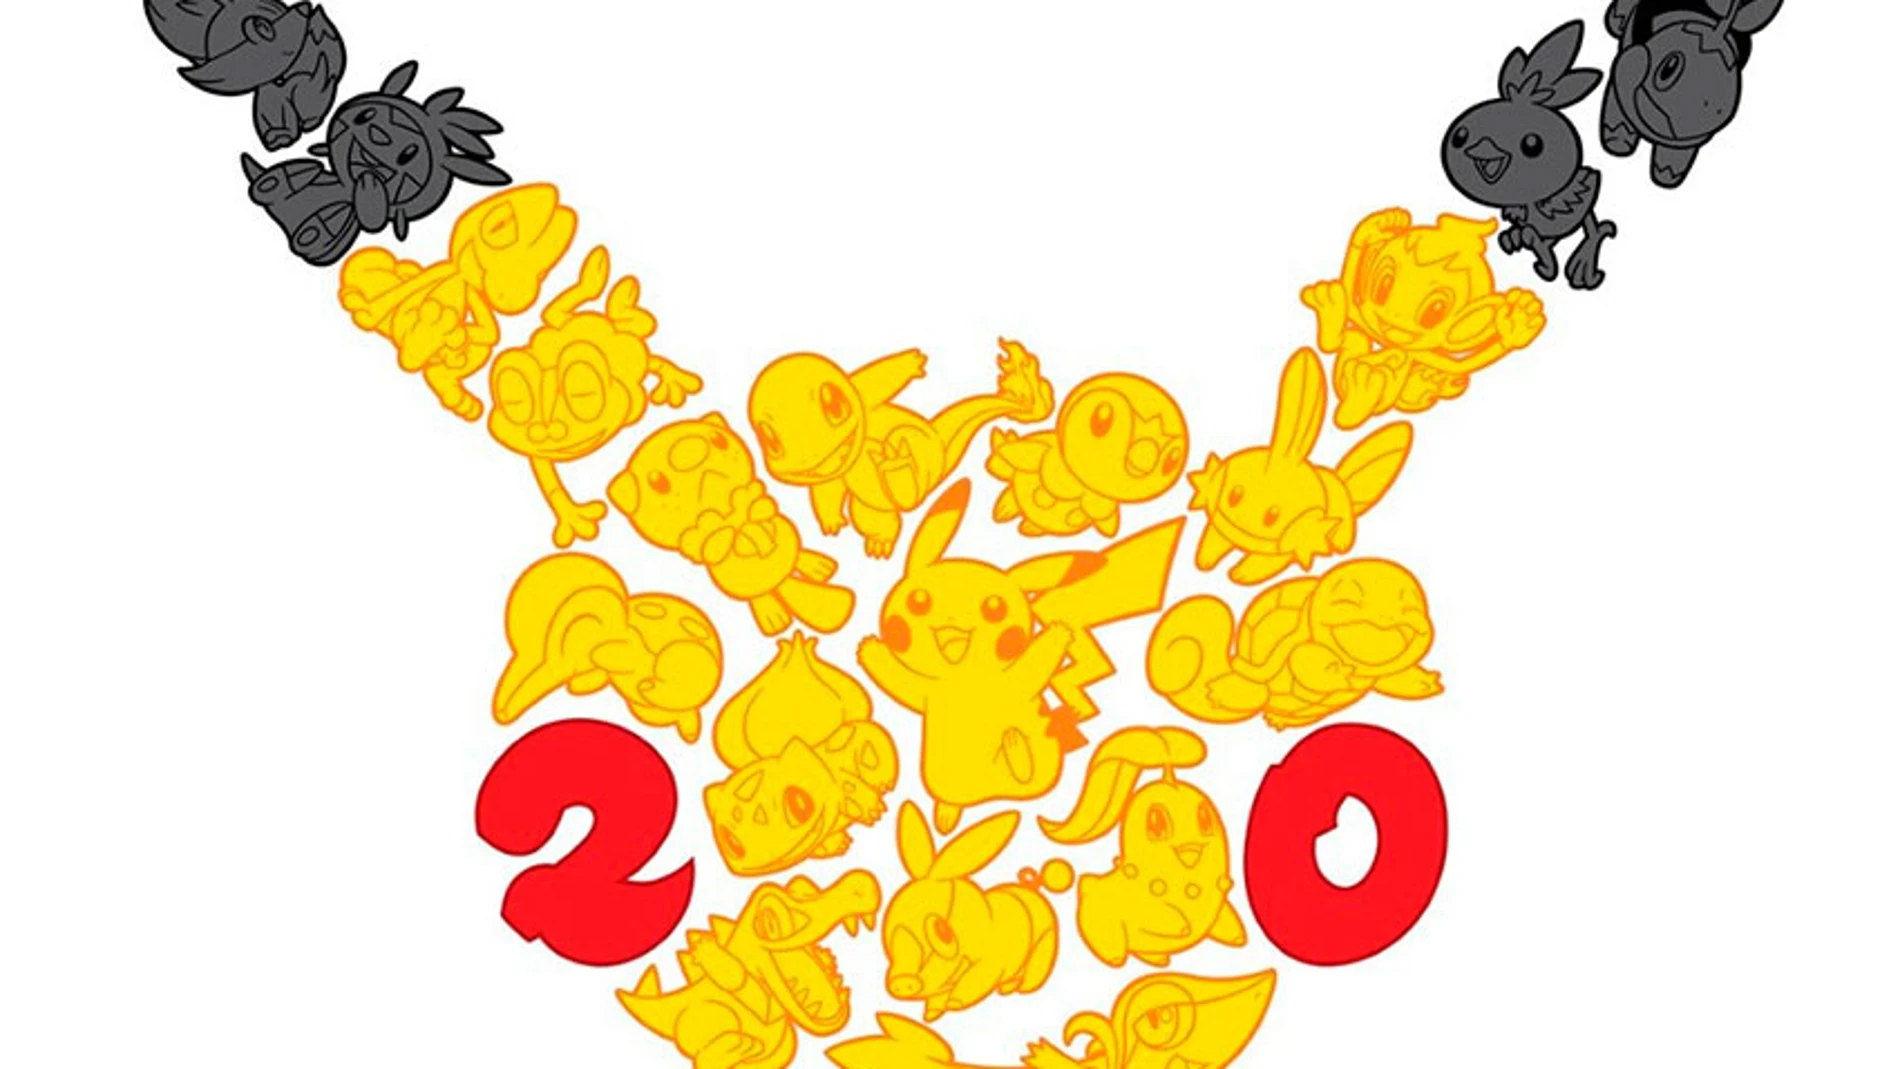 Ash, Pikachu y compañía cumplen 20 años en pleno estado de forma